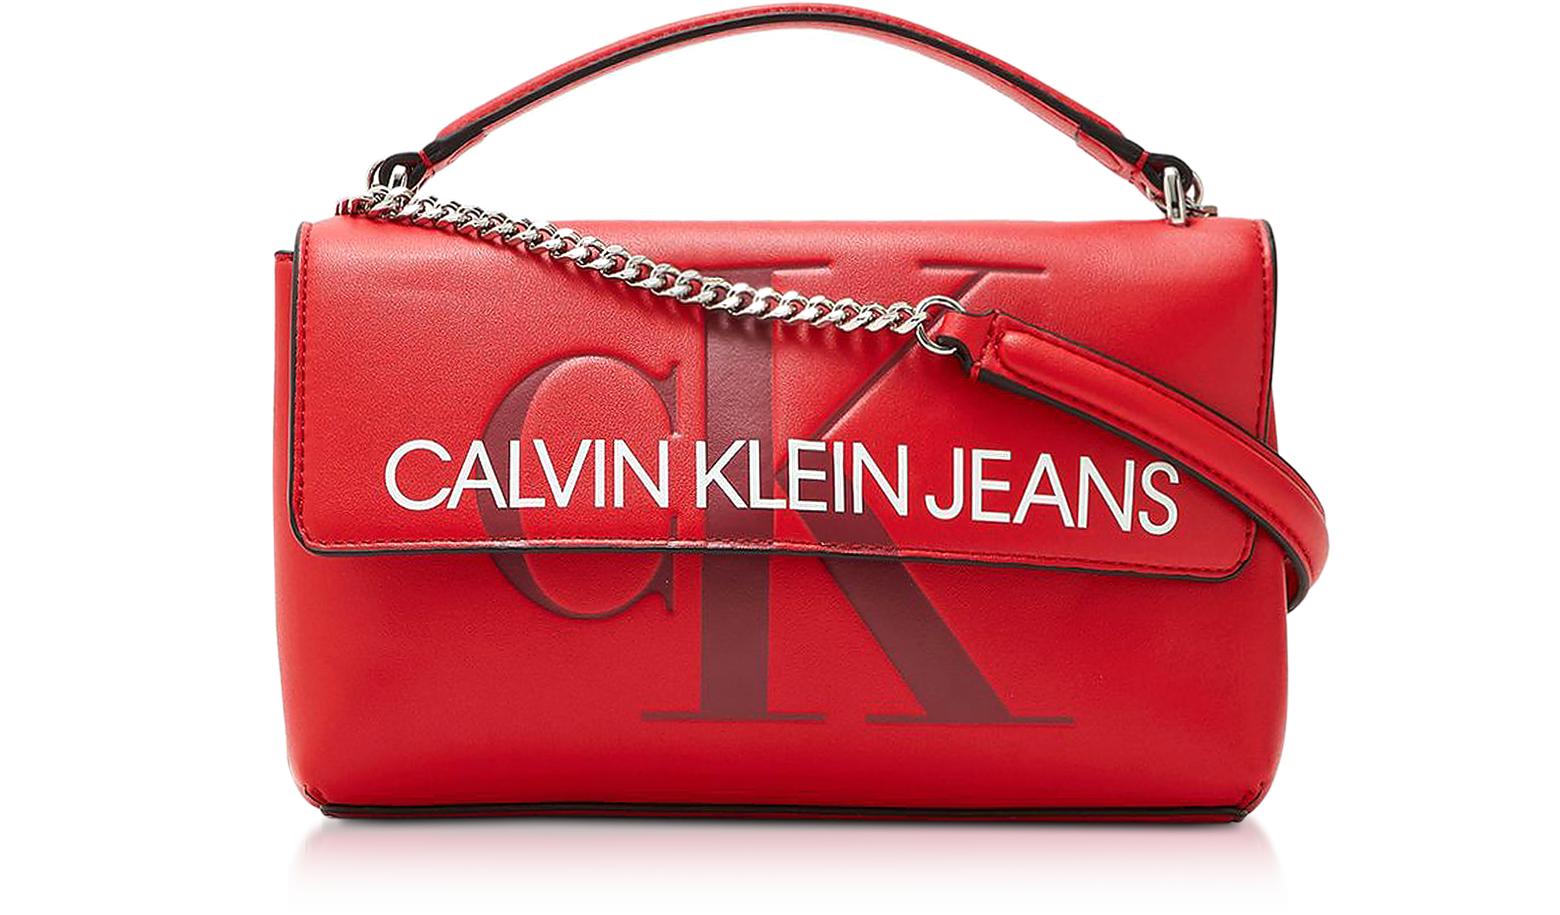 Calvin Klein Jeans faux leather monogram logo shoulder bag in